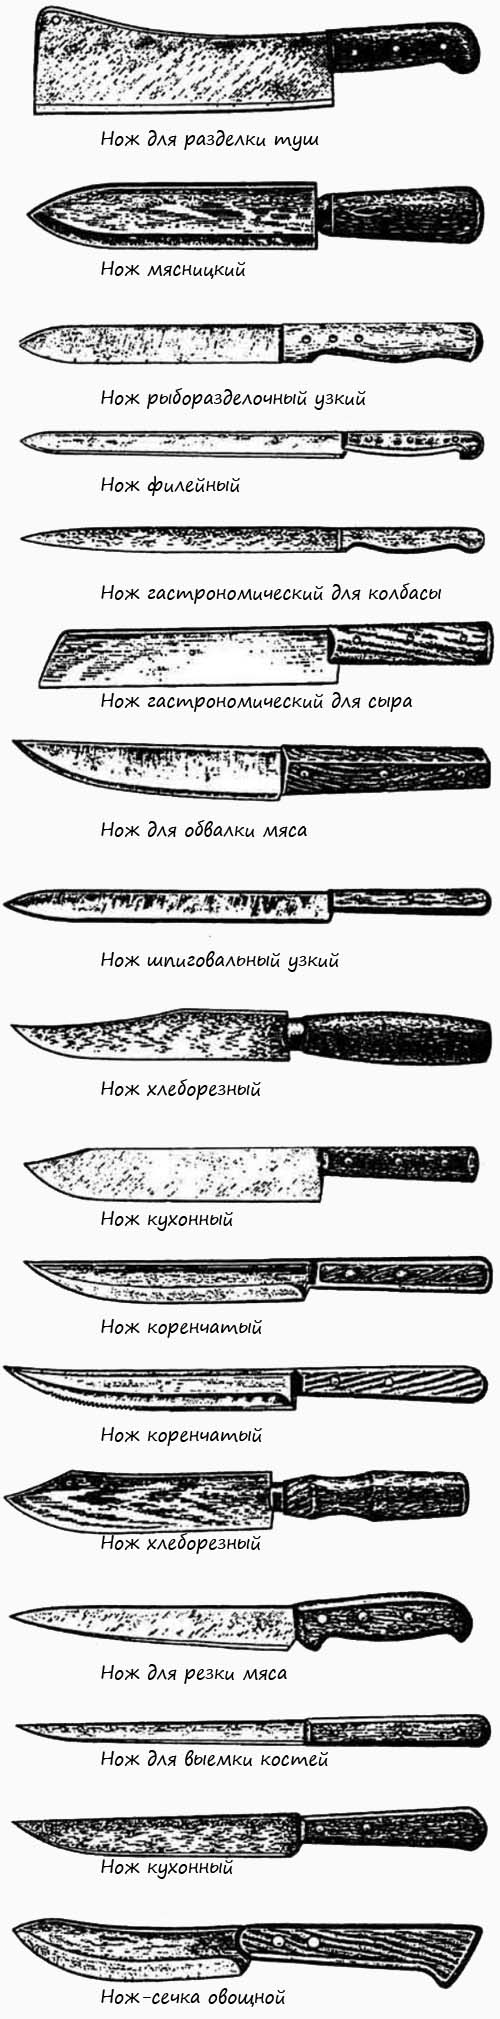 Рабочие и бытовые ножи